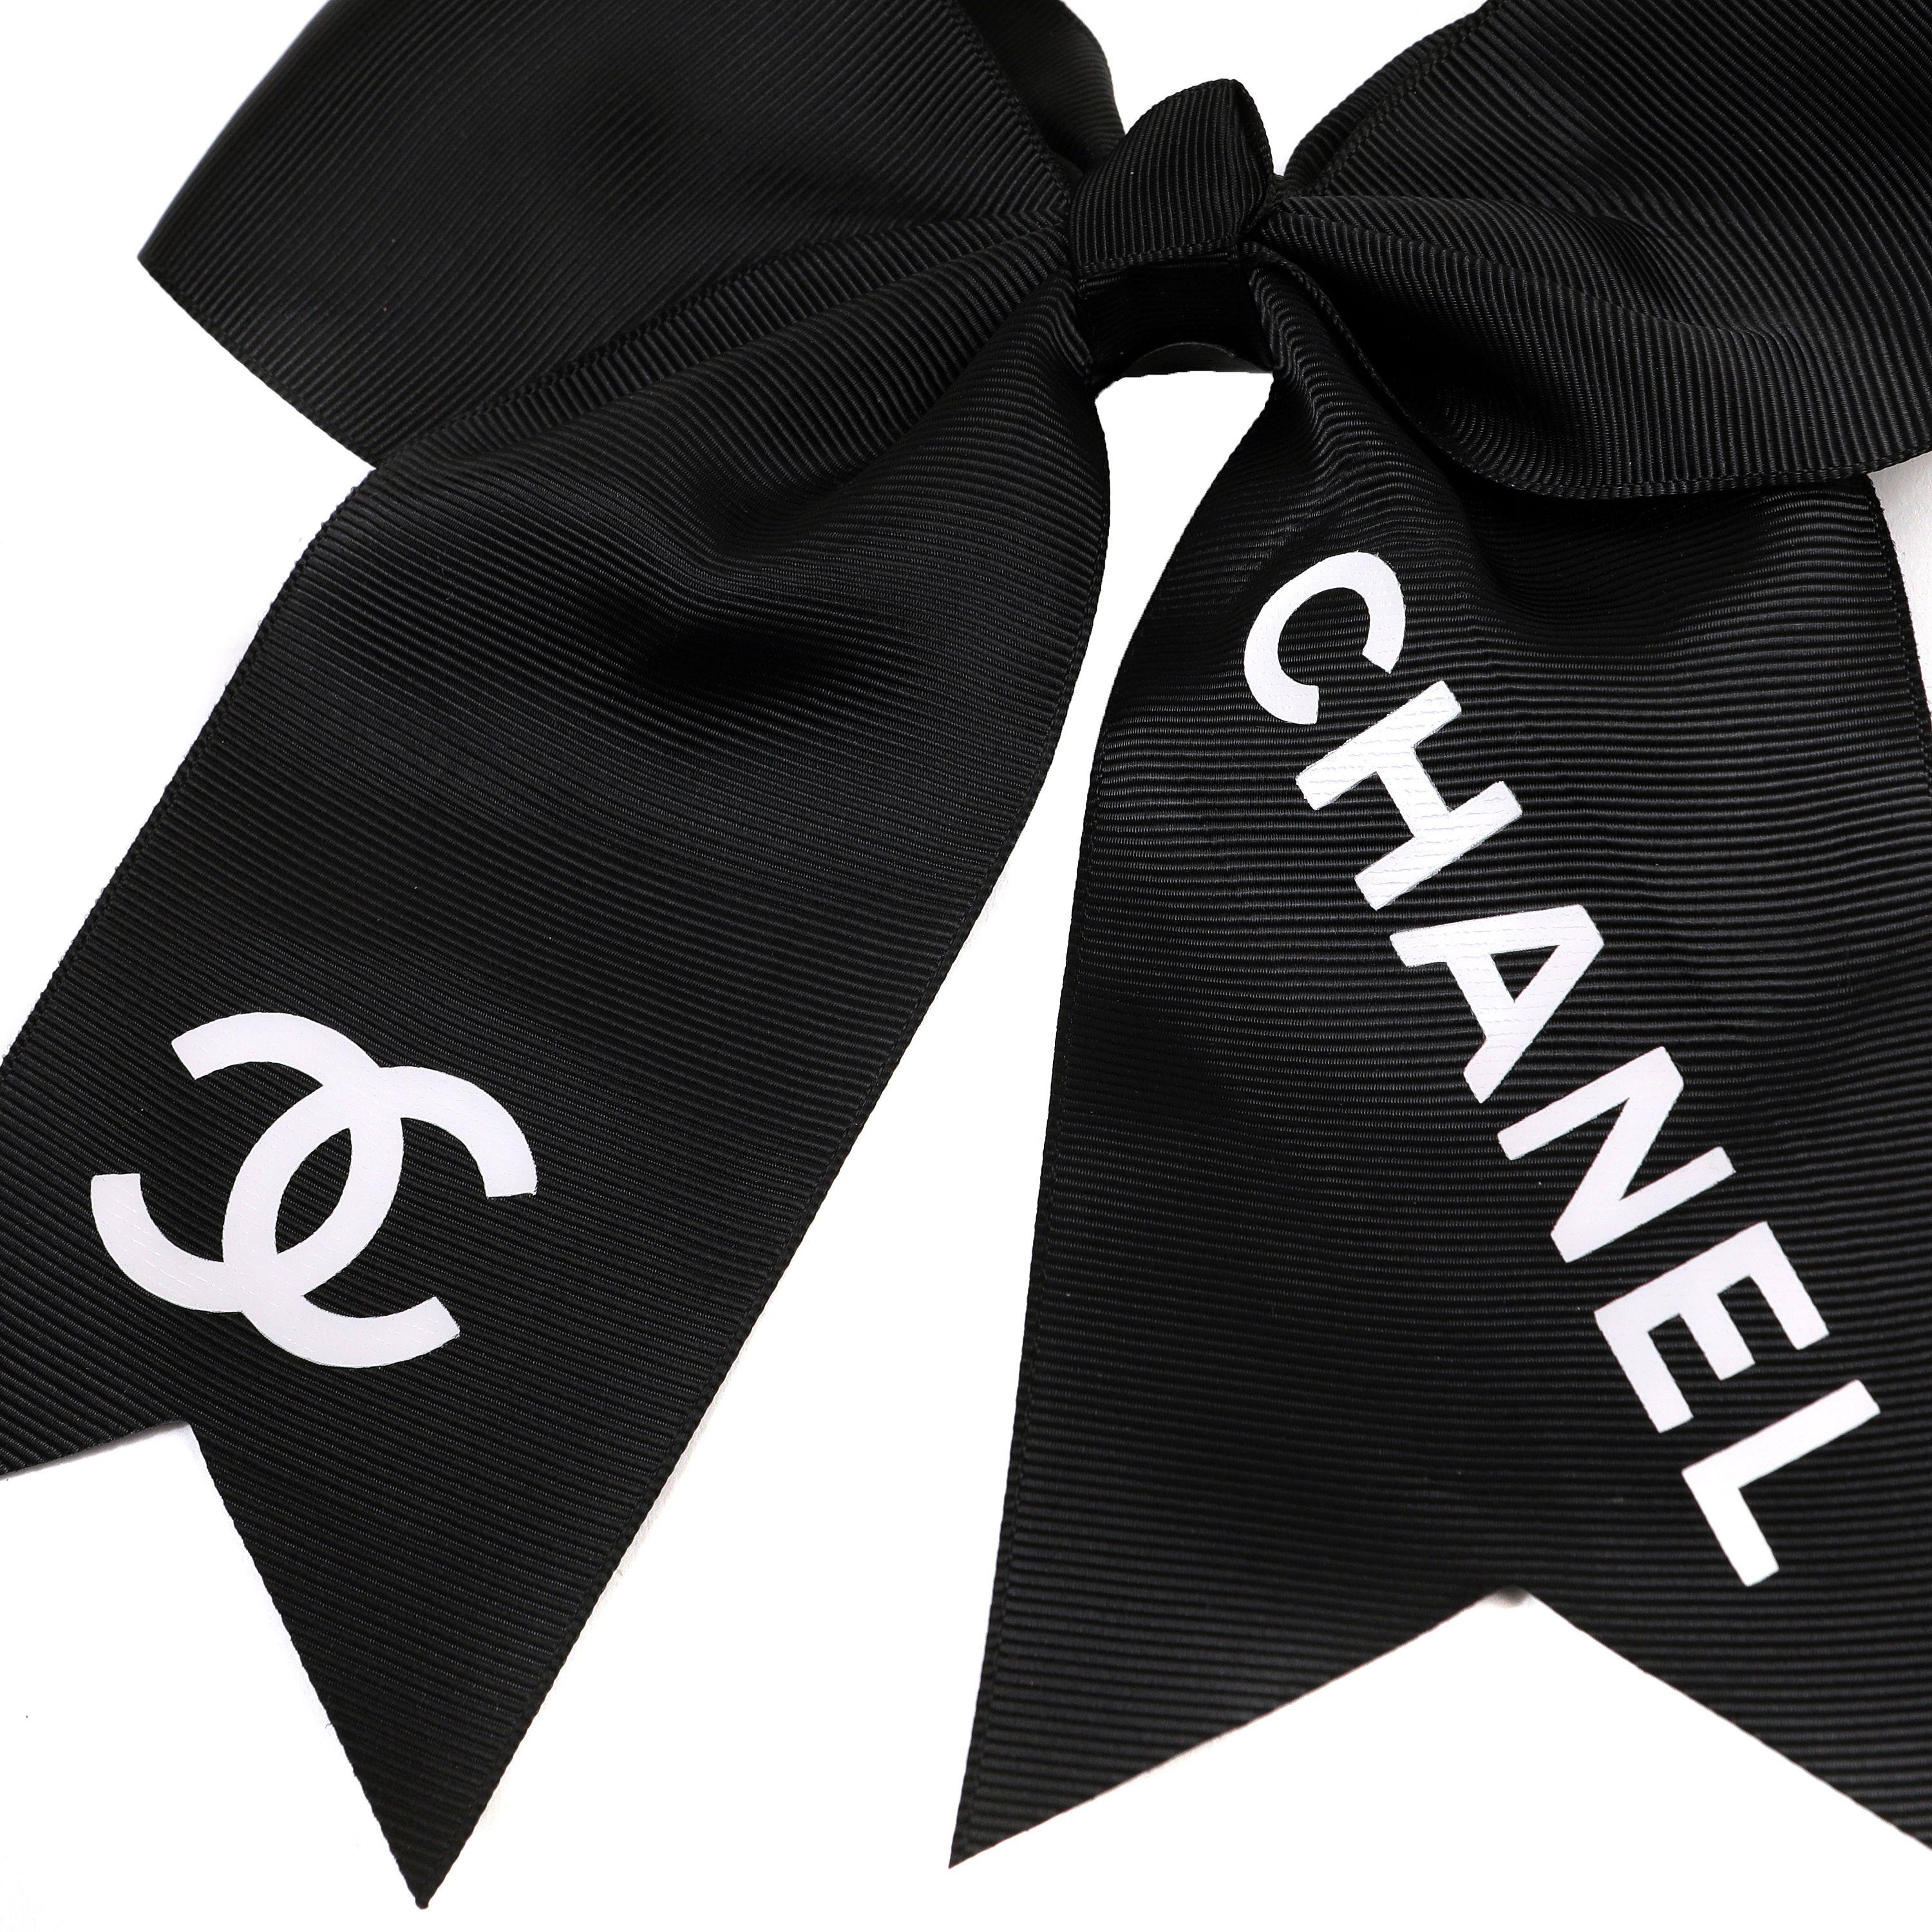 Cet authentique. Le nœud papillon noir de Chanel est impeccable.  Boucle surdimensionnée en gros-grain noir avec CC blanc et lettres CHANEL.  Attache élastique.  
PBF 13940
